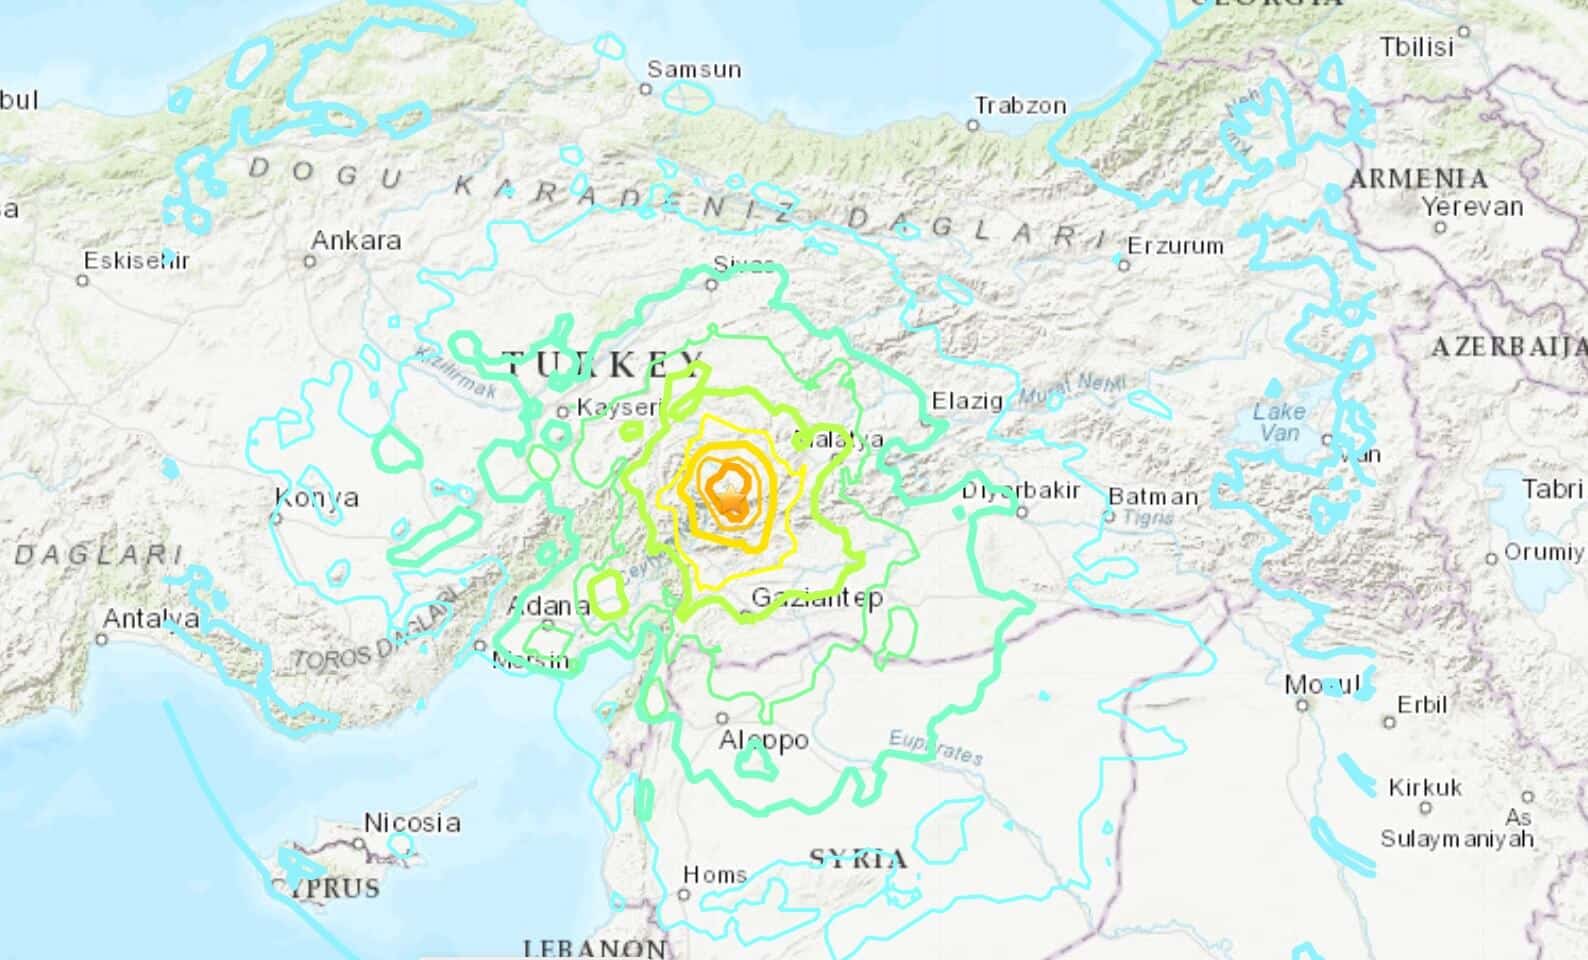 מפת רעידת האדמה הראשונה שהתרחשה בדרום טורקיה ב-6/2/22 בשעה 03:00 שעון ישראל לערך. צילום מסך מאתר השירות הגיאולוגי האמריקני USGS